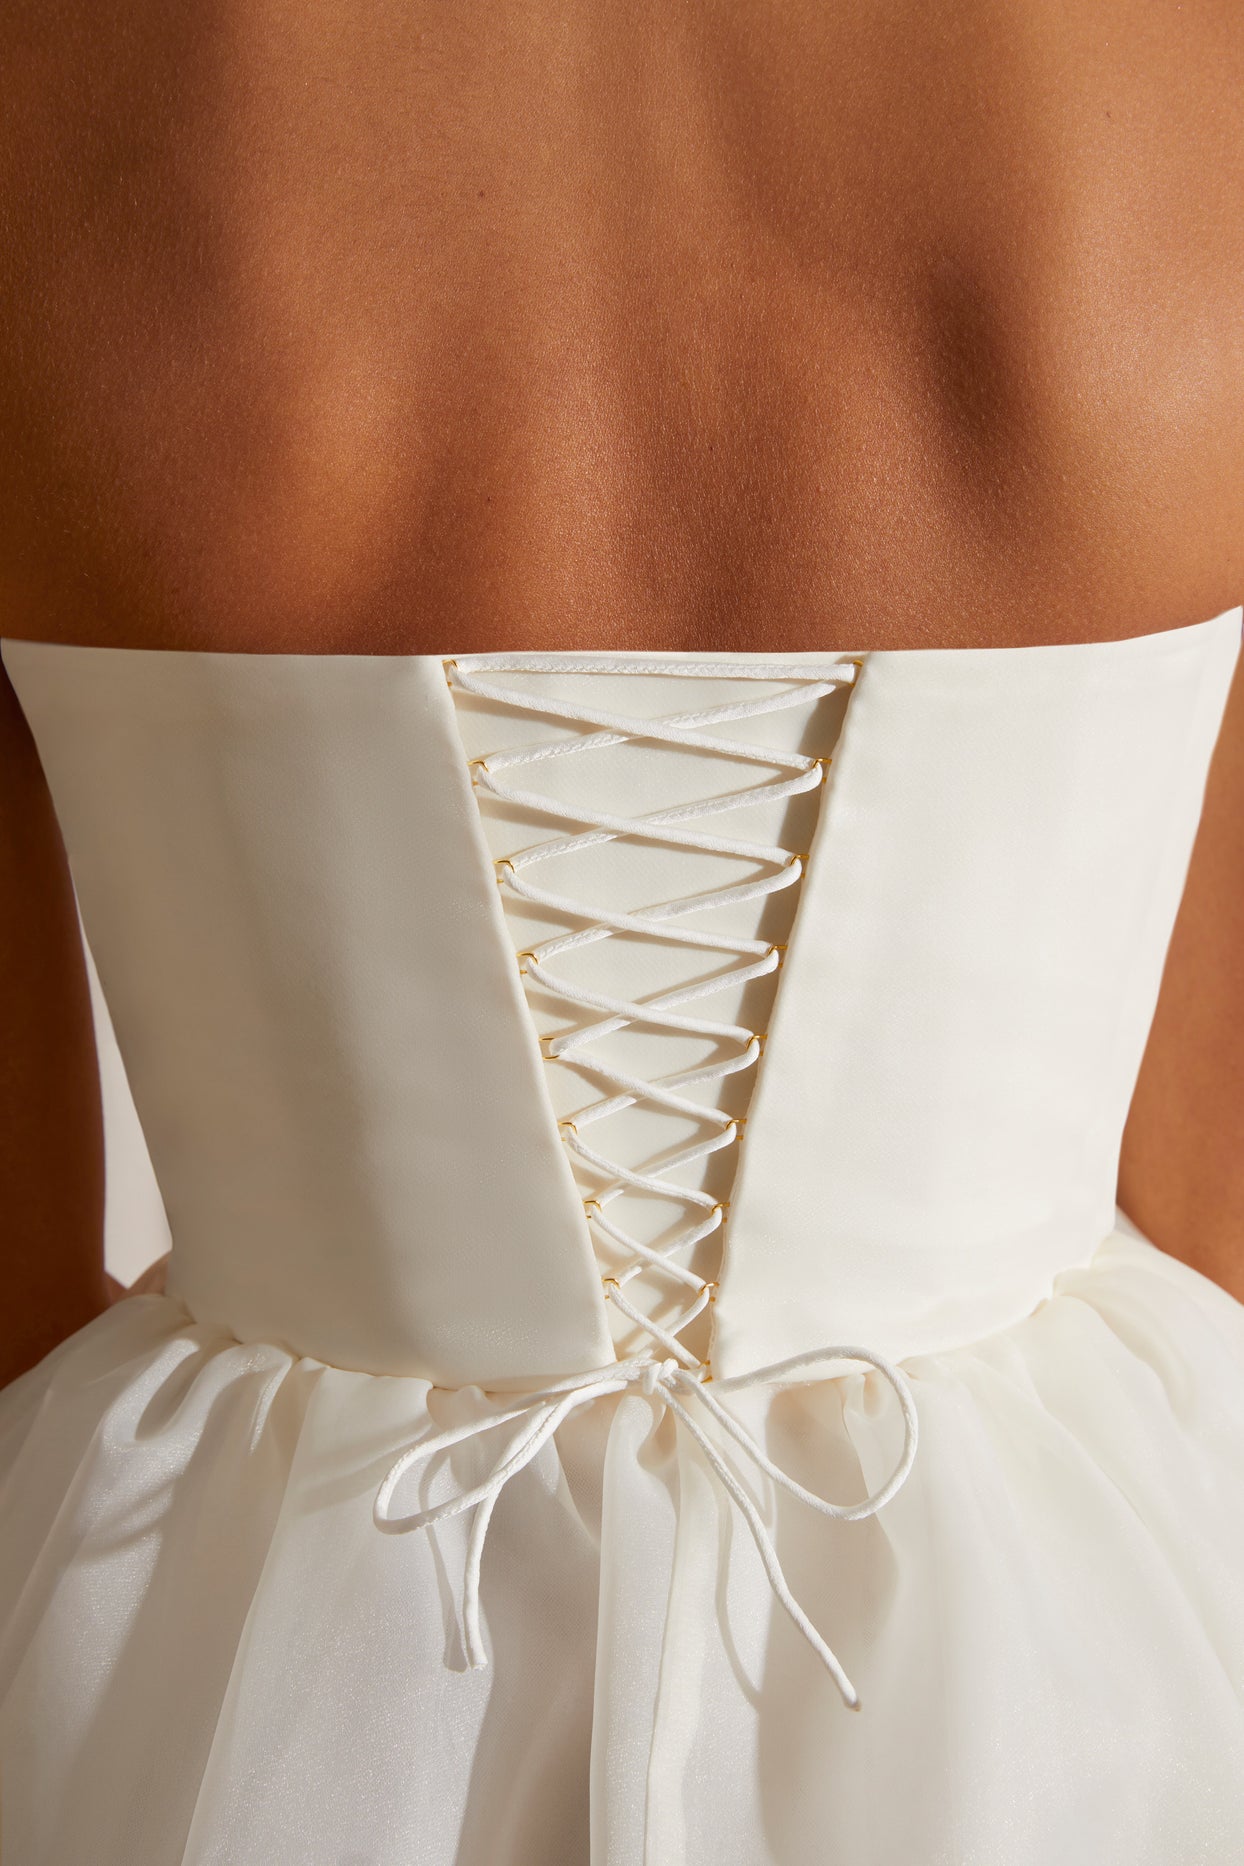 Gorsetowa, tiulowa sukienka midi bez ramiączek w kolorze białym